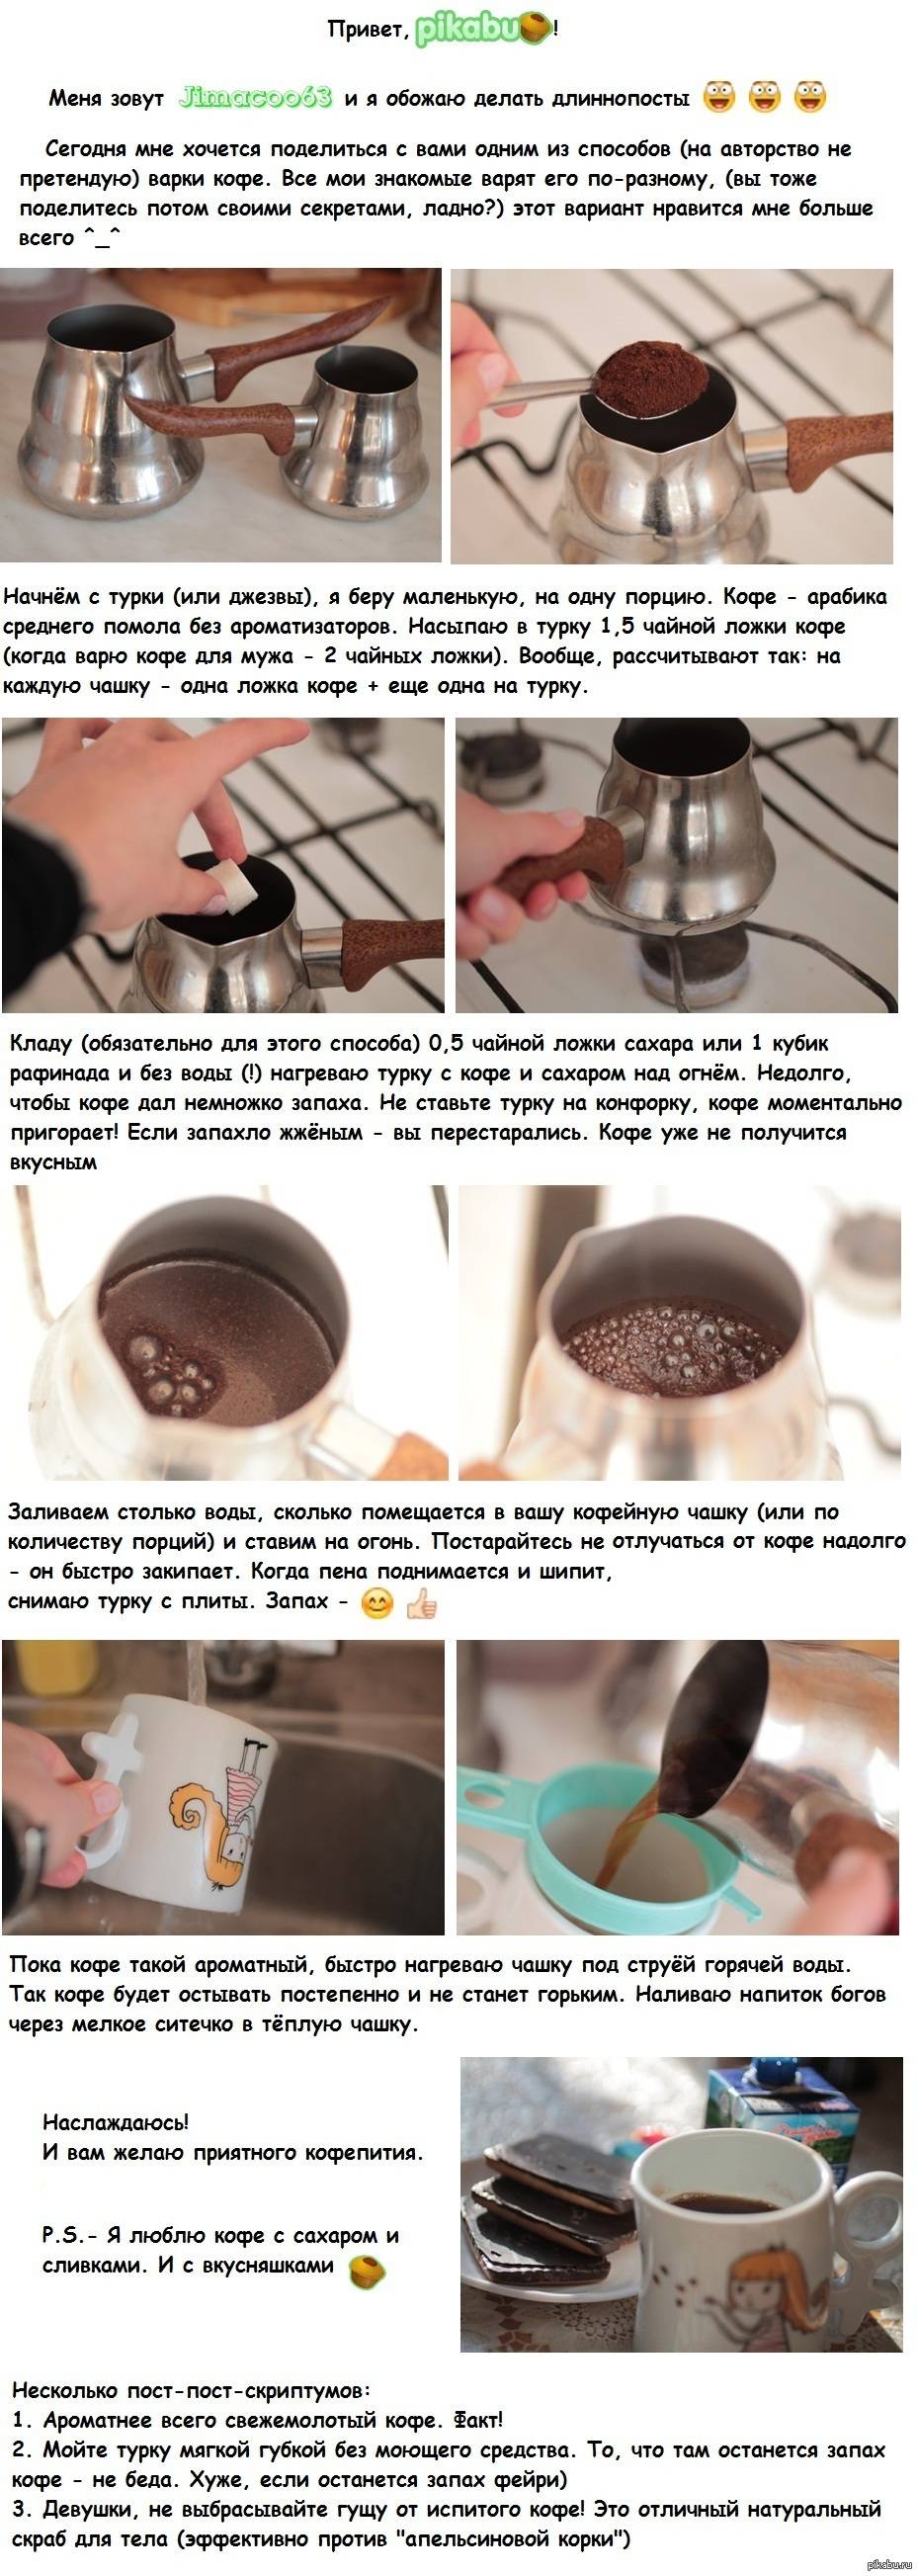 Как варить кофе в кофеварках типа — гейзерная, рожковая, капельная